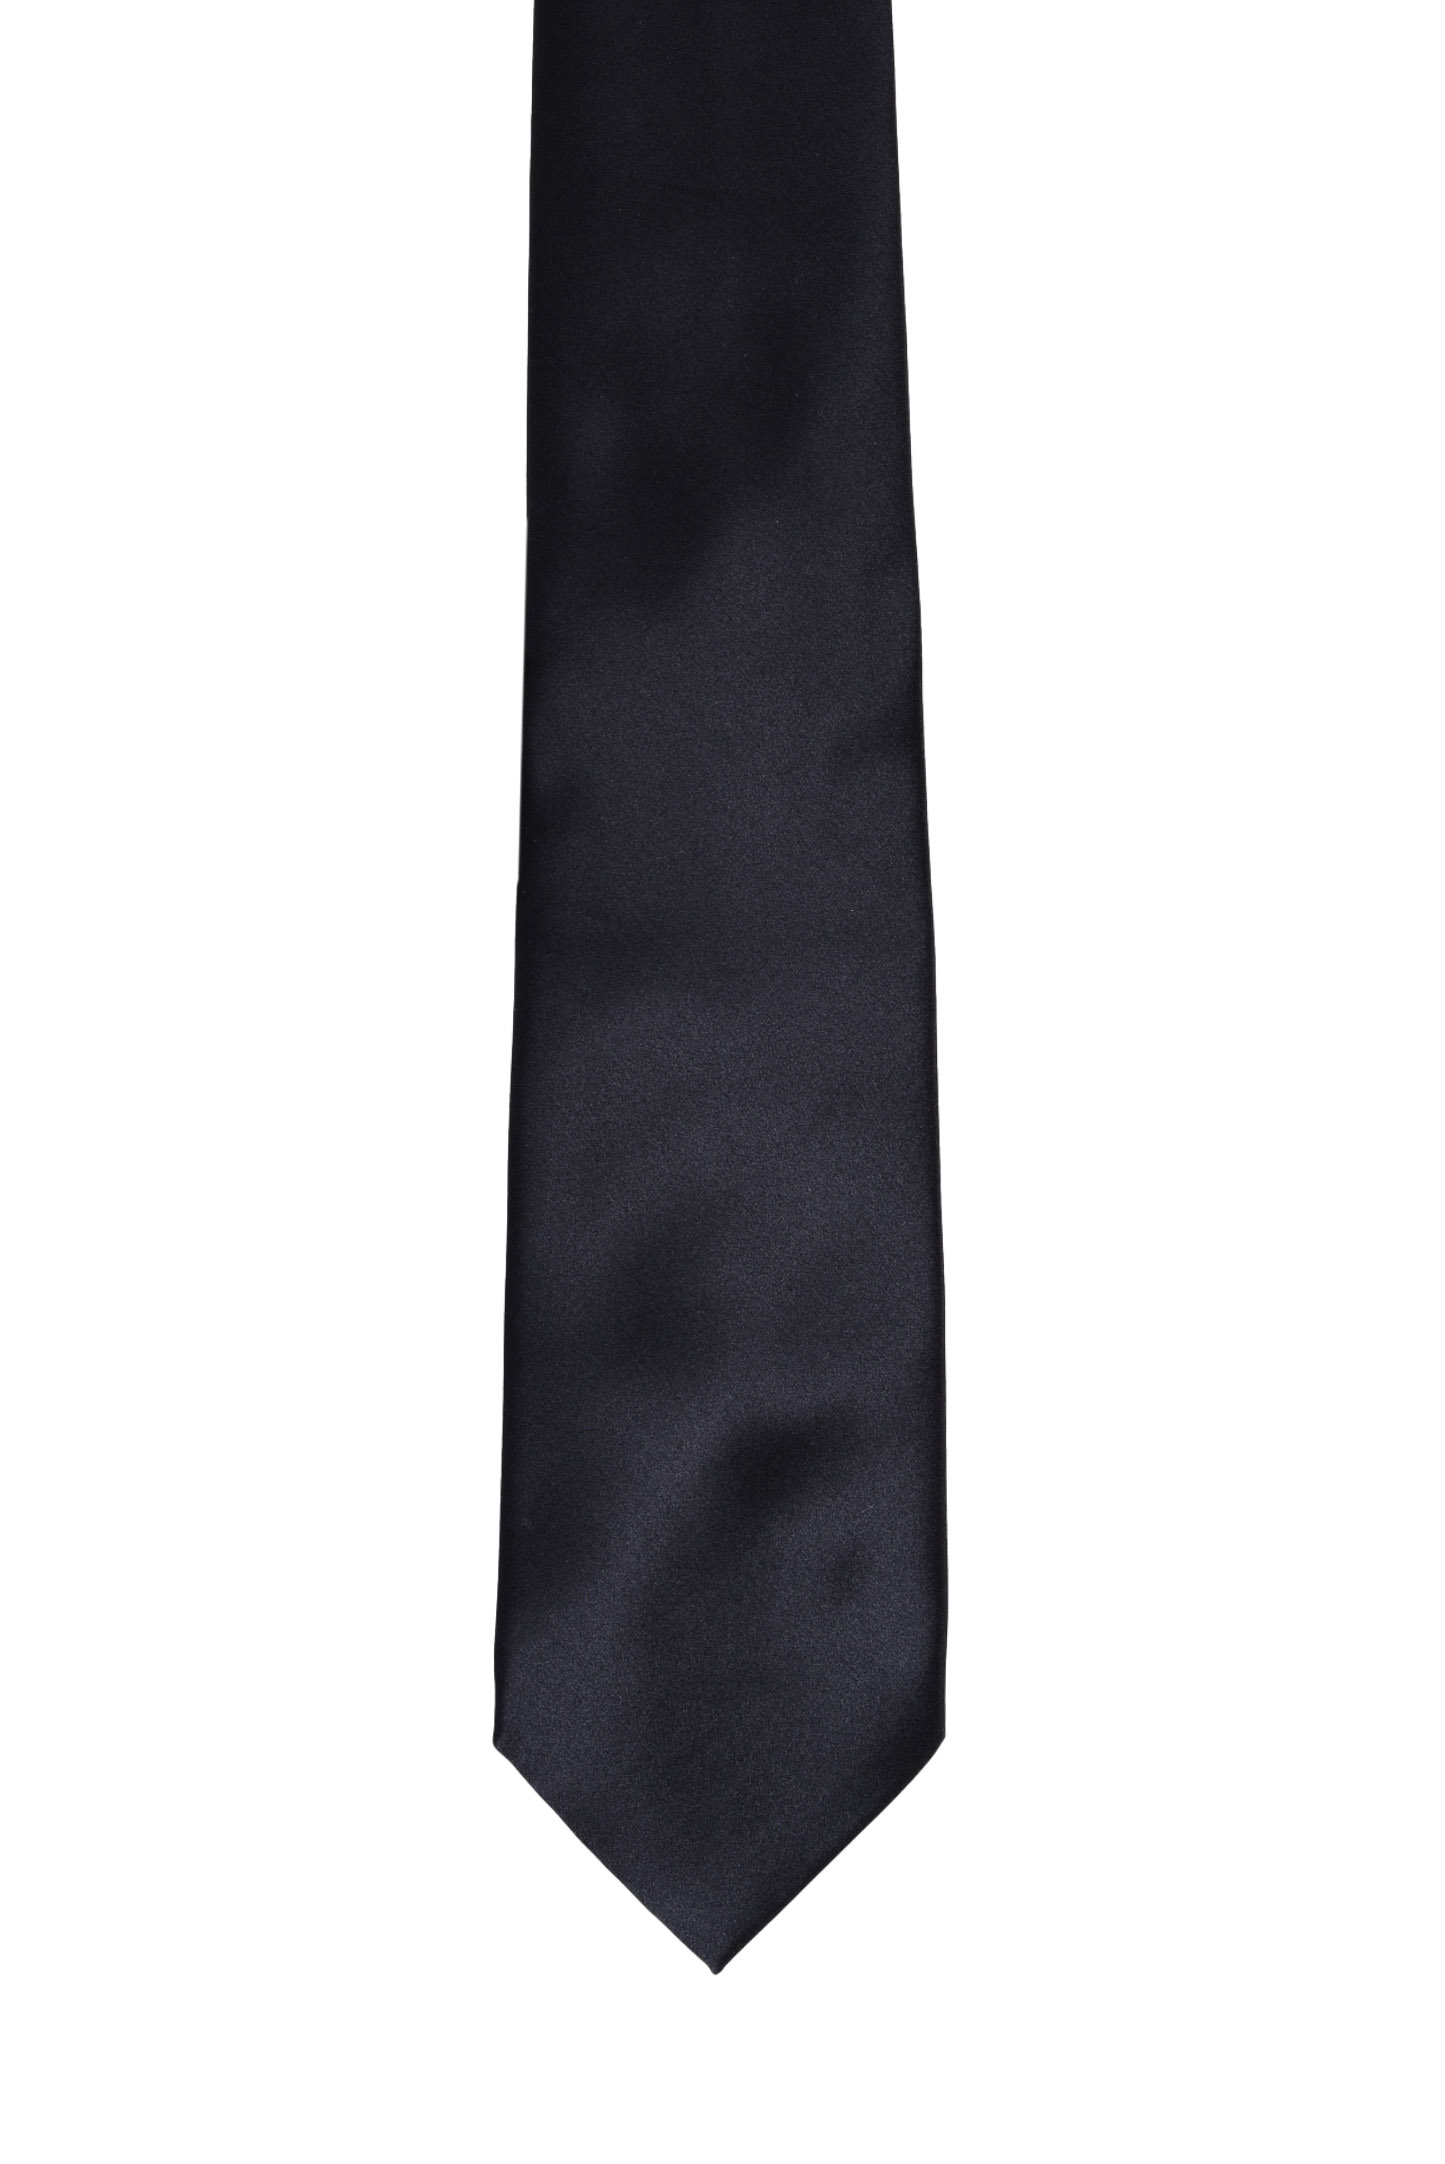 Галстук и платок STEFANO RICCI DHU UNIR 013, цвет: Черный, Мужской